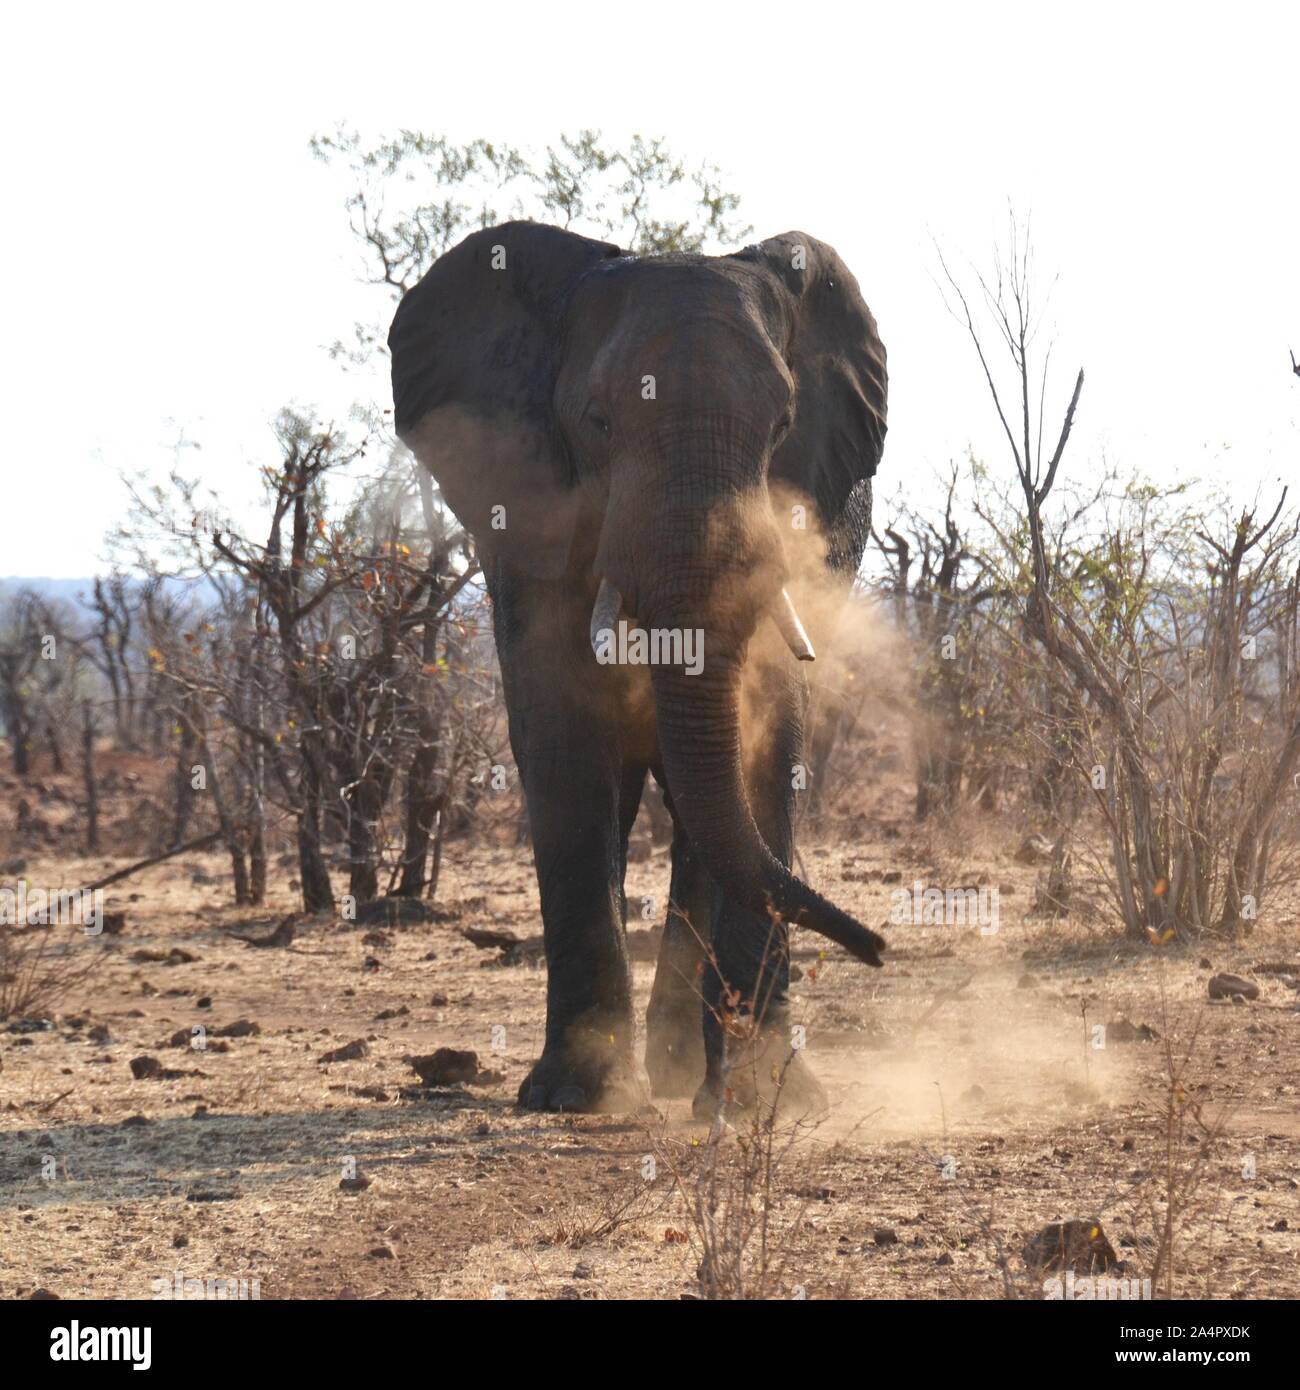 Großen wilden afrikanischen Elefanten mit großen Stoßzähnen Erstellen einer Staub Badewanne für sich selbst auf dem trockenen trockenen Winter Savanne im Krüger Nationalpark in Südafrika Stockfoto